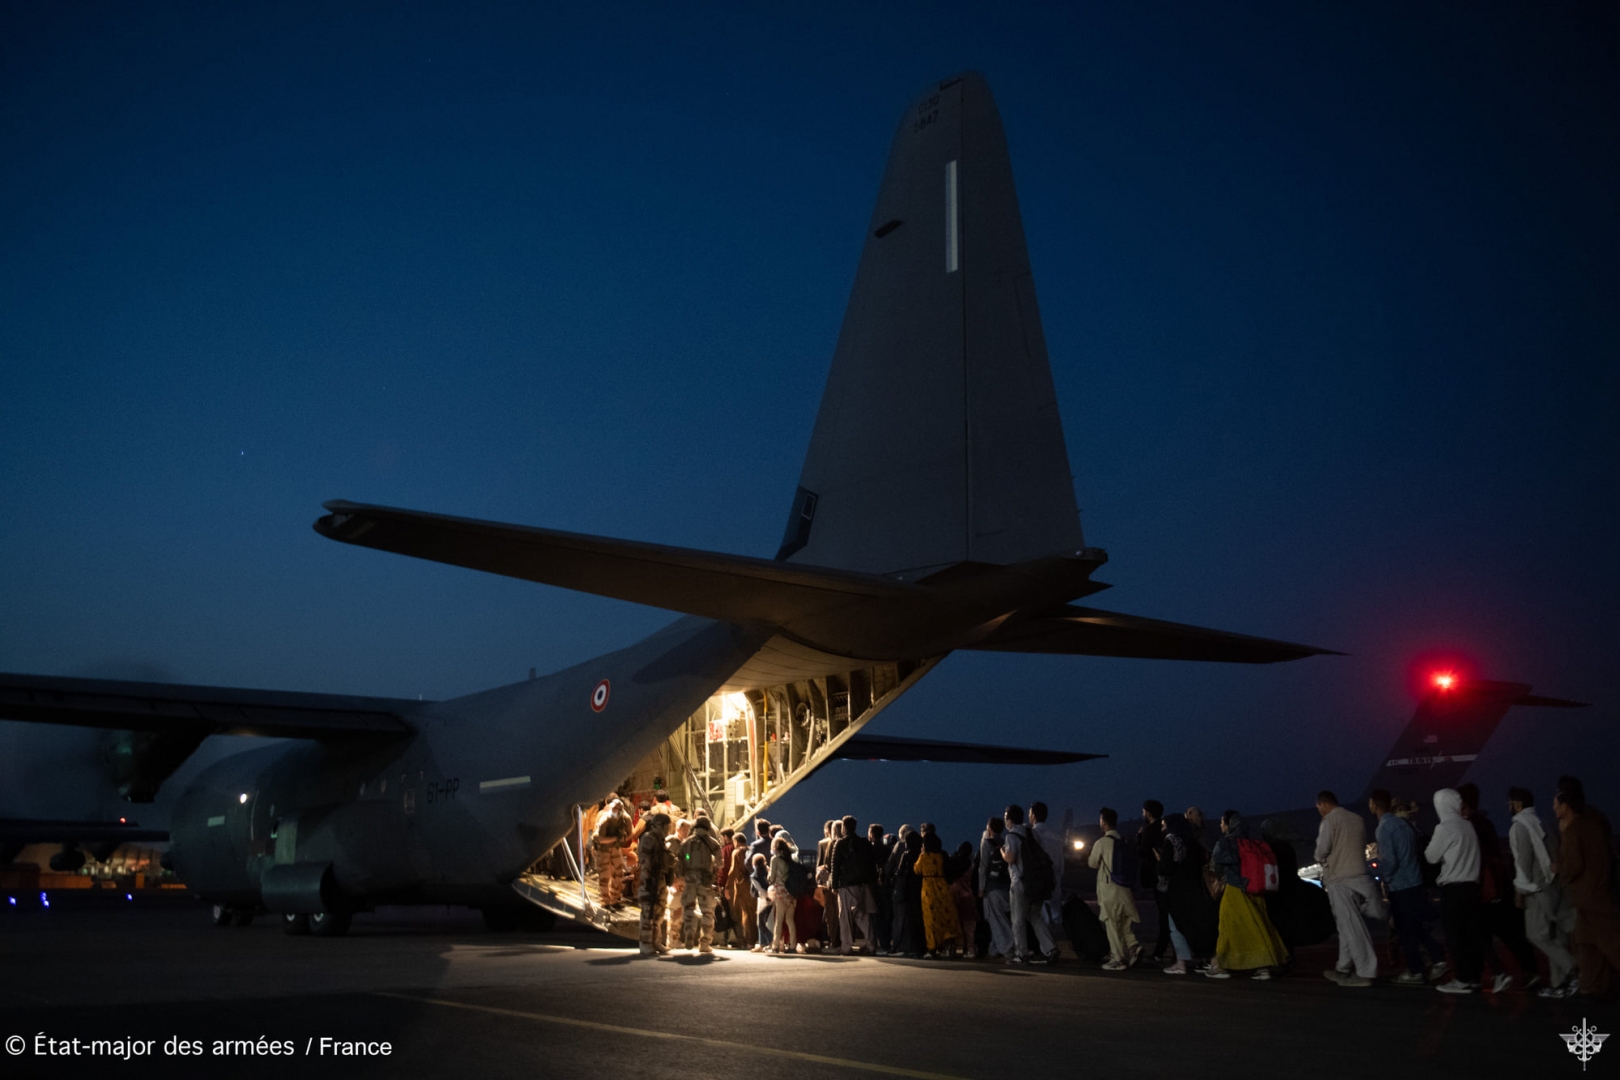 Un C-130J français à l'aéroport de Kaboul prêt à exfiltré les ressortissants afghan fuyant les talibans